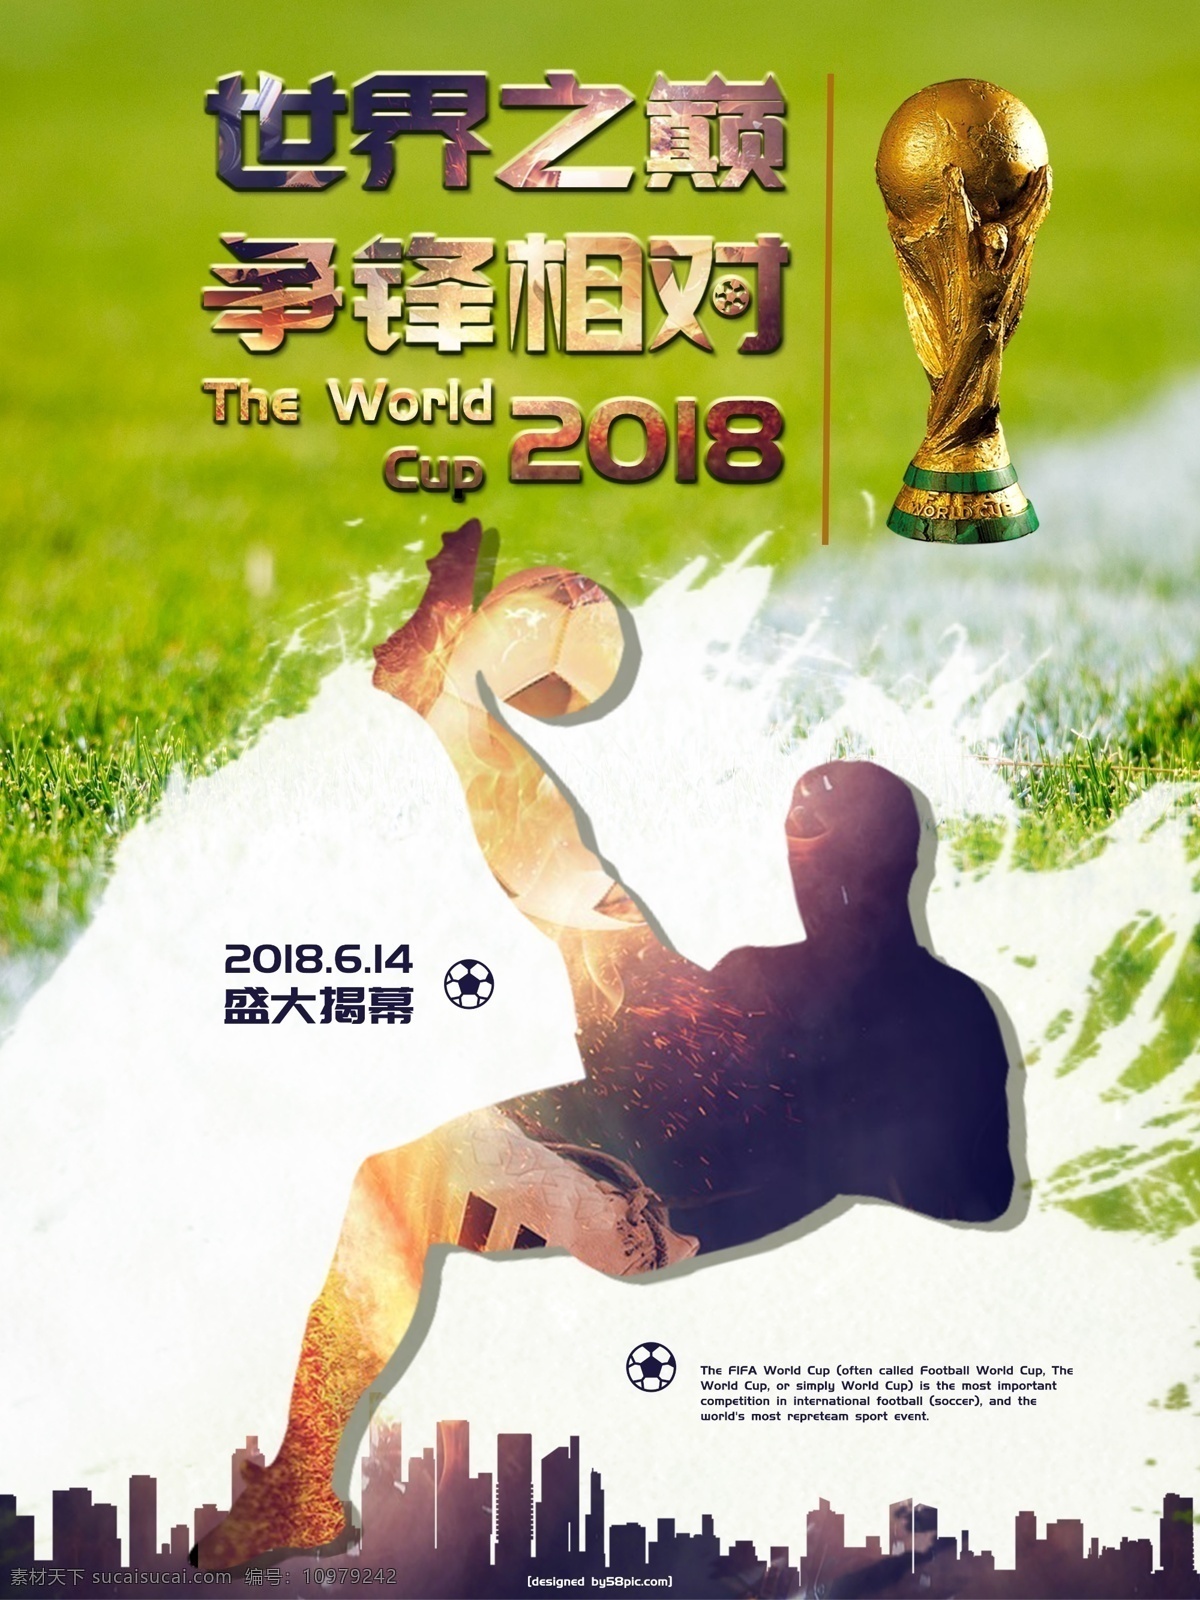 激情 澎湃 2018 世界杯 体育 宣传海报 世界杯海报 体育海报 运动 运动海报